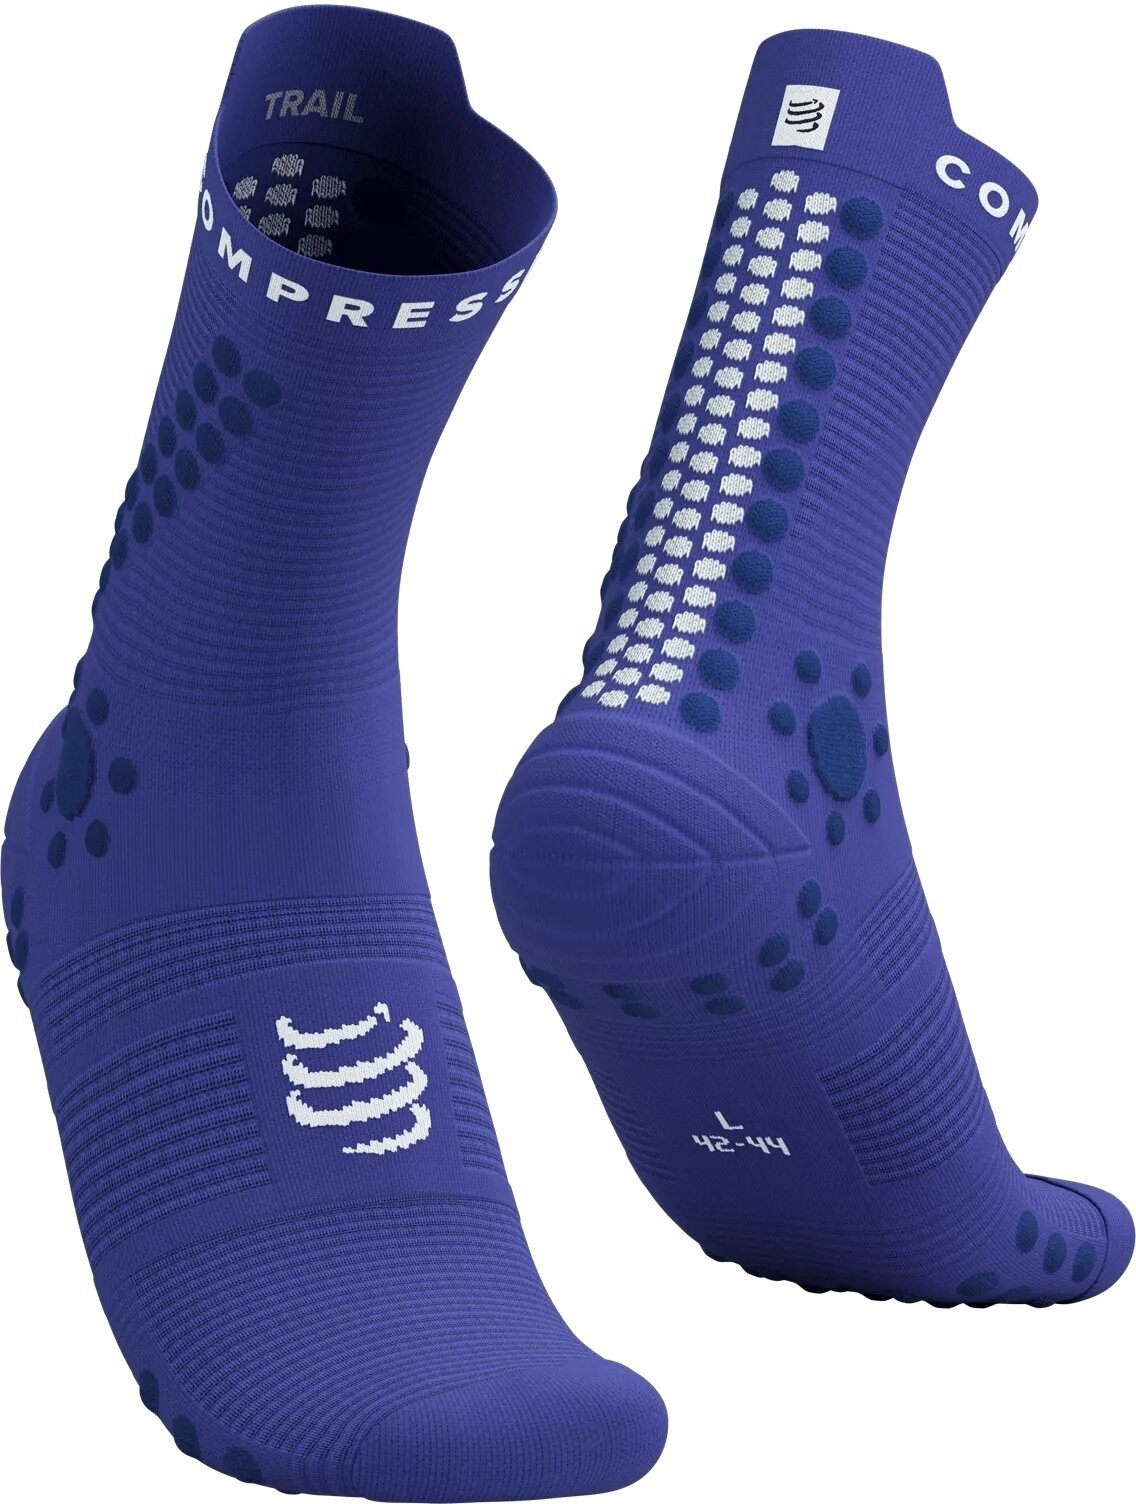 Chaussettes de course
 Compressport Pro Racing Socks V4.0 Trail Dazzling Blue/Dress Blues/White T1 Chaussettes de course